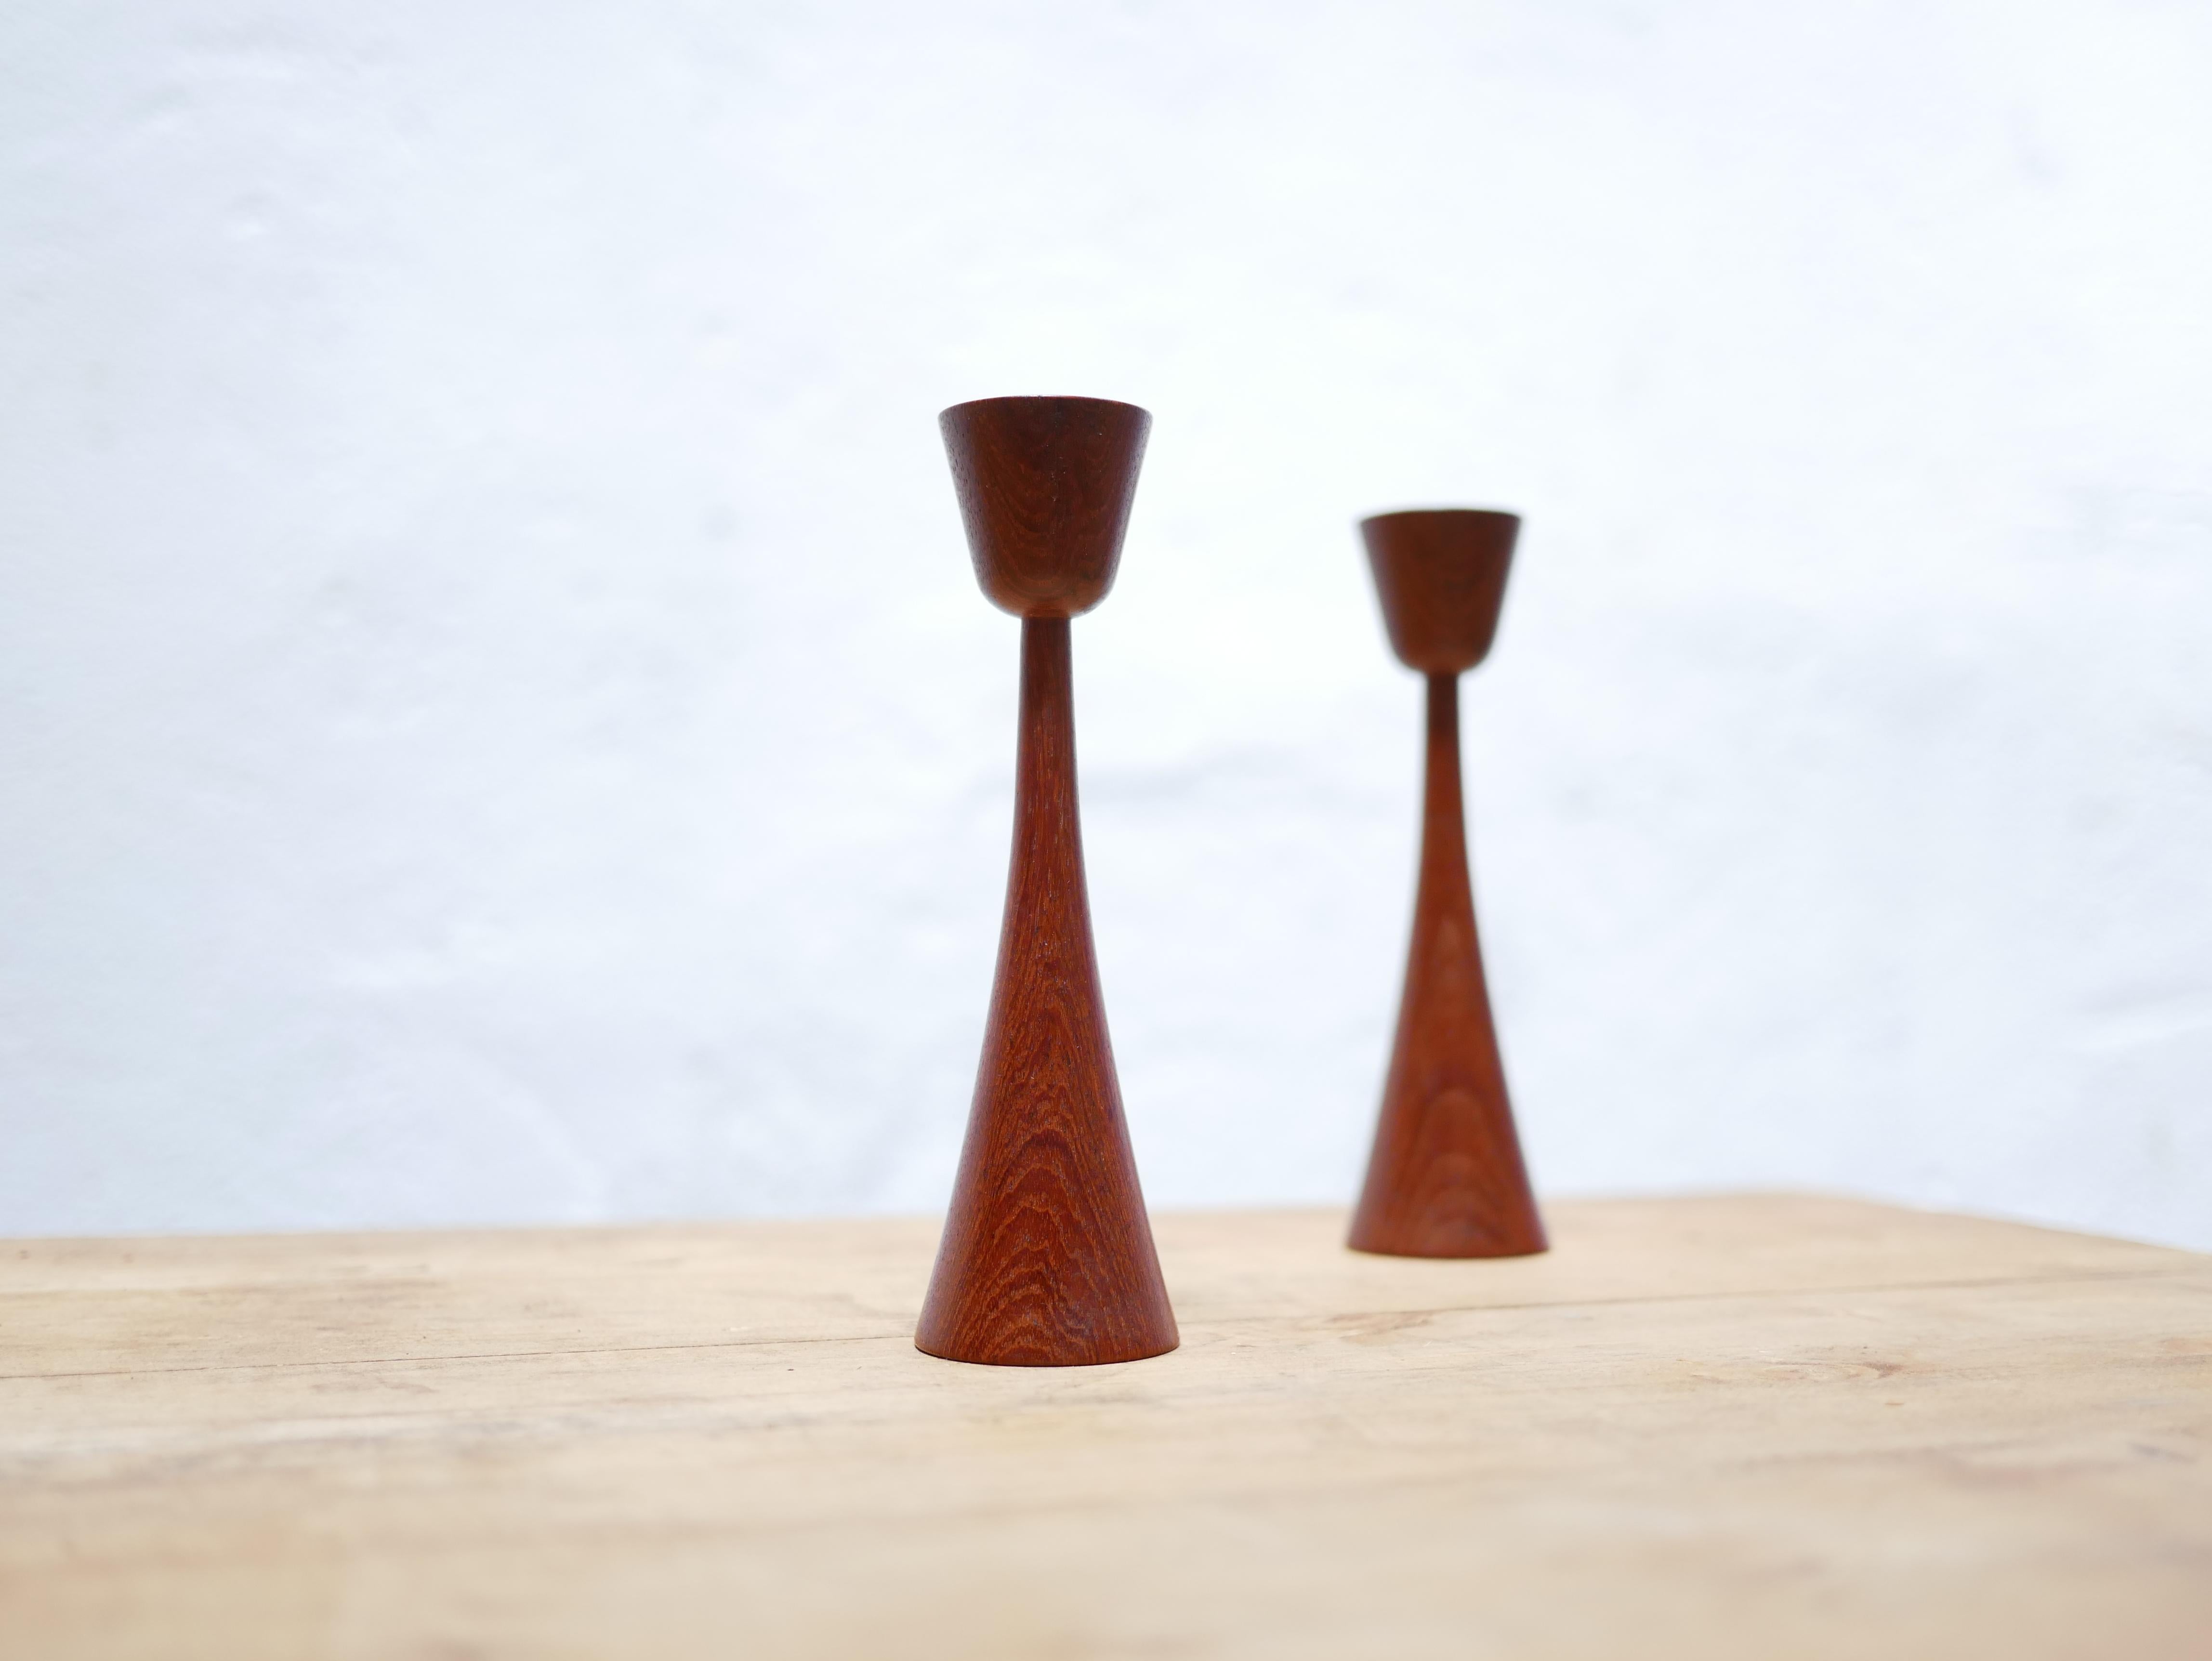 Ein Paar skandinavische Teakholz-Kerzenhalter, hergestellt in Dänemark in den 1960er Jahren.

Design, Ästhetik und Trend, die Kerzenhalter werden in einer natürlichen und raffinierten Dekoration perfekt sein.
Wir stellen sie uns einfach auf einem